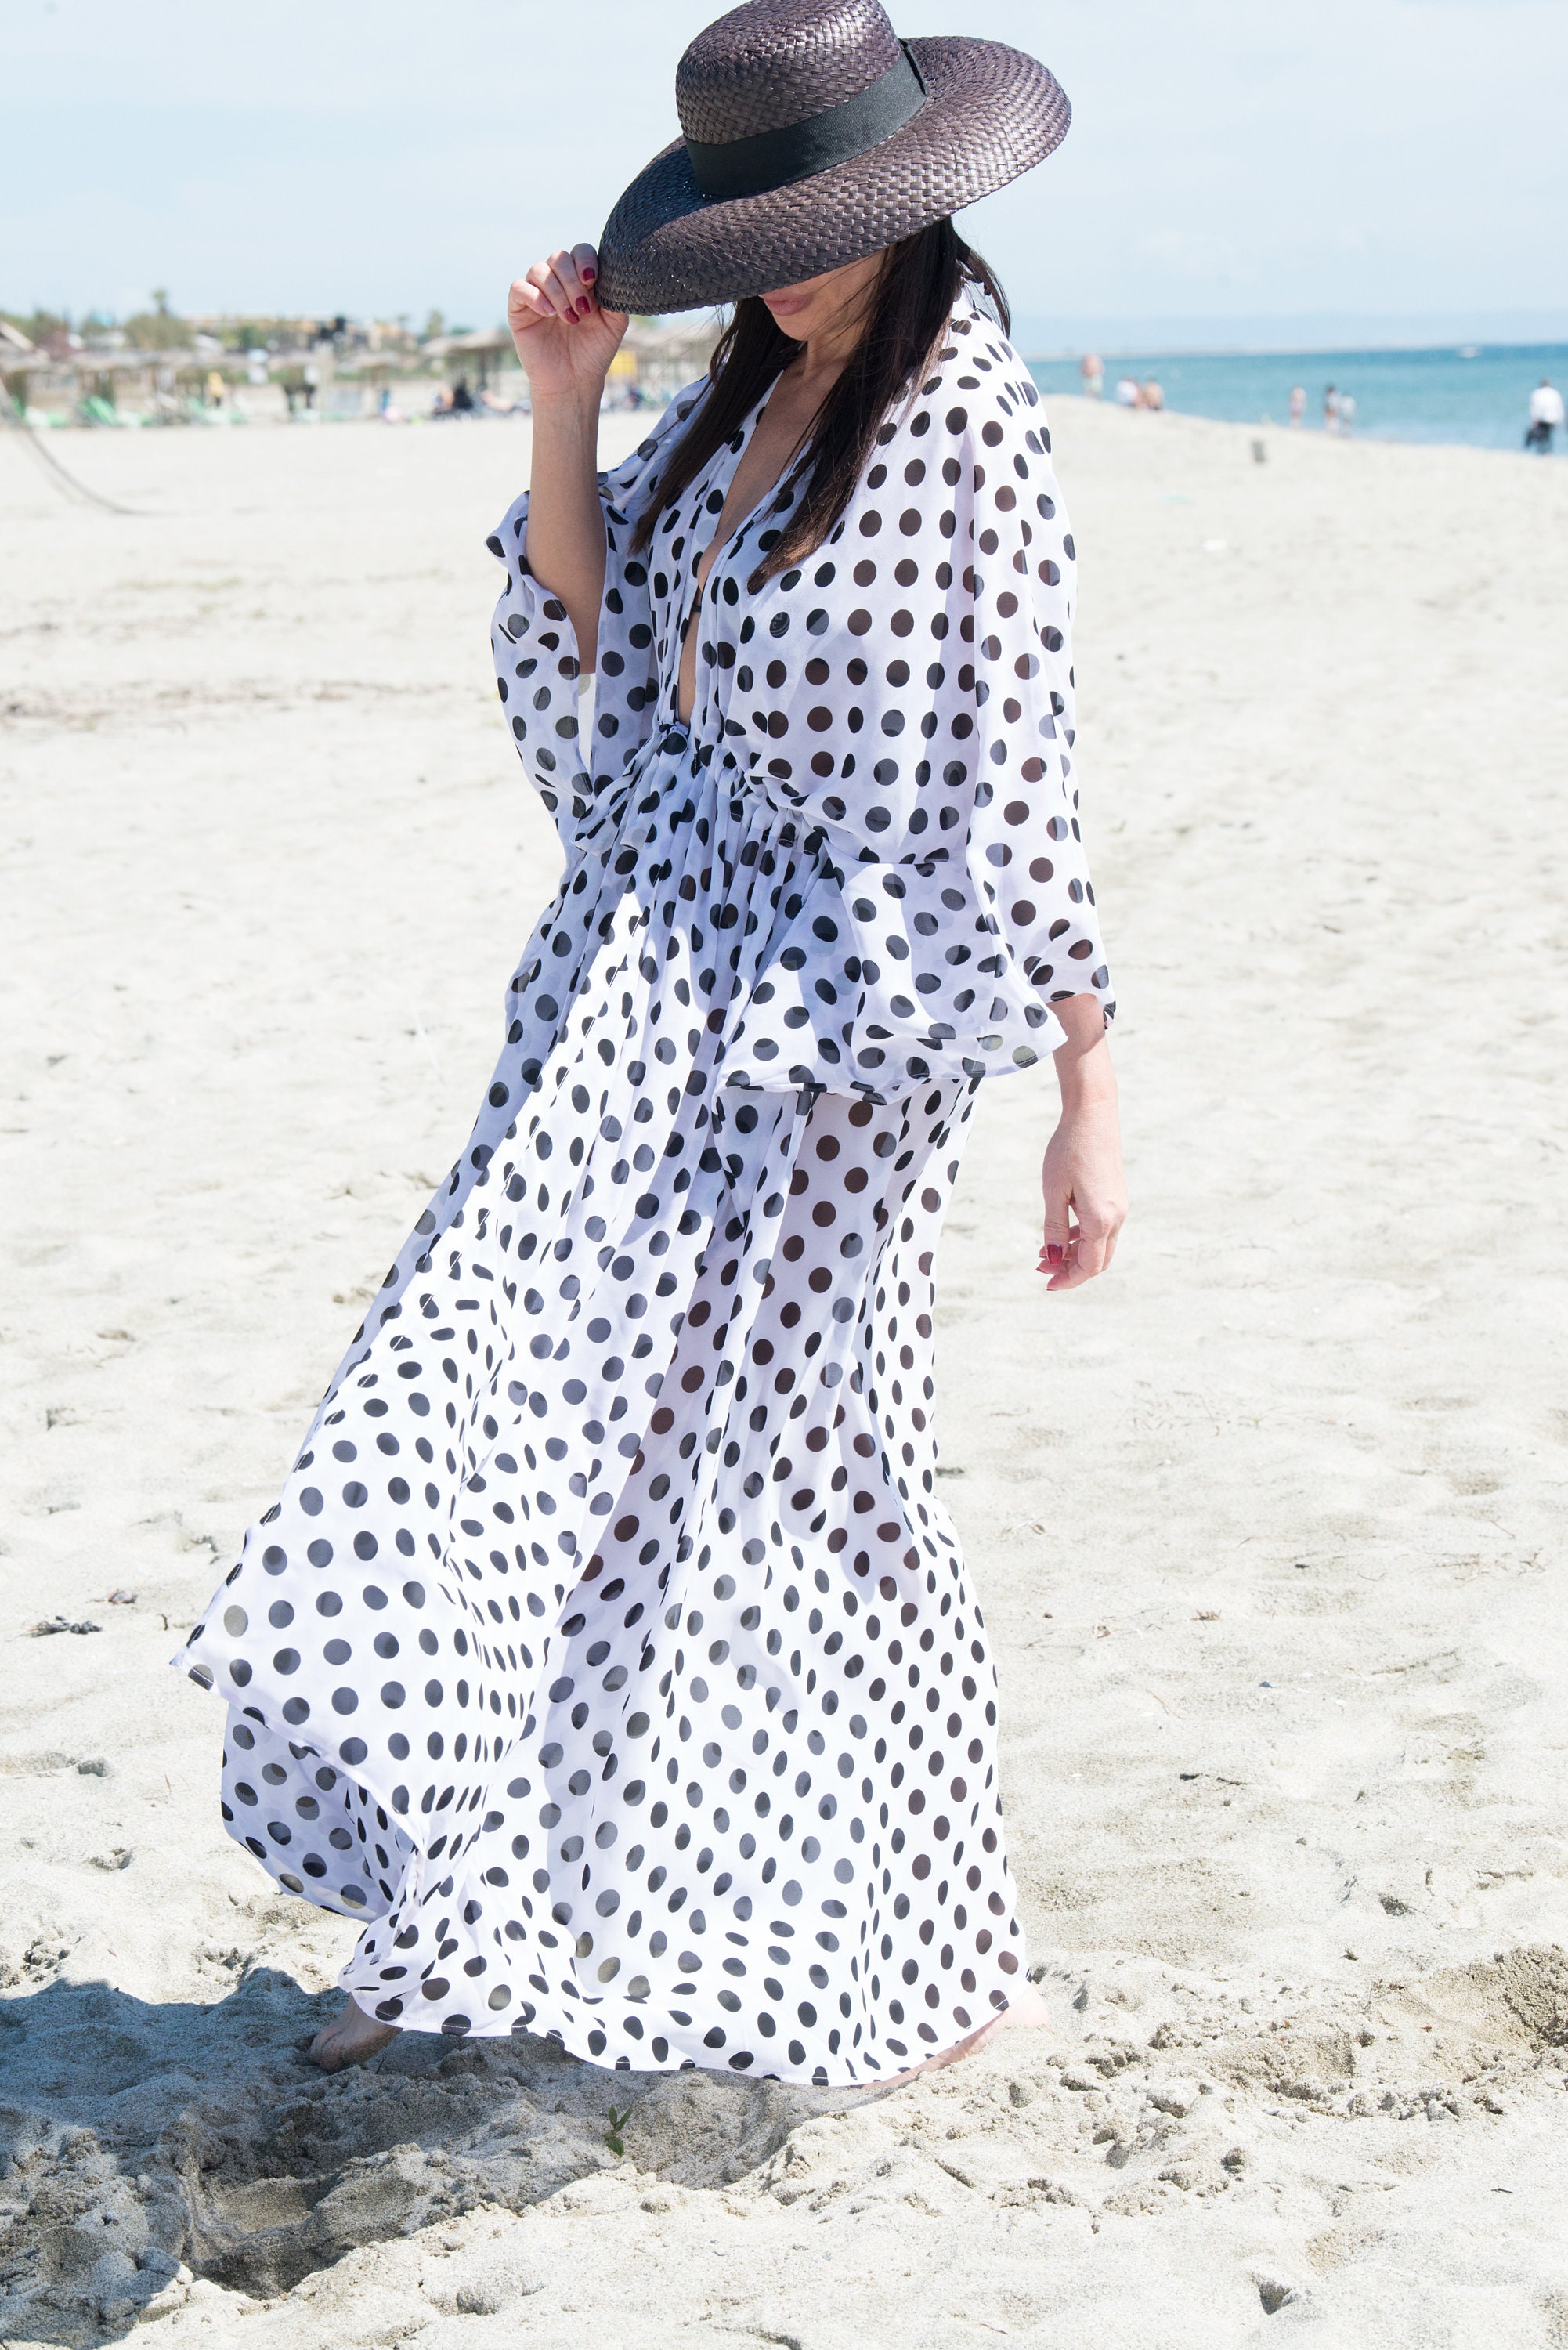 Beach dress cover up / Beach Polka dots Maxi Kaftan / Beach | Etsy